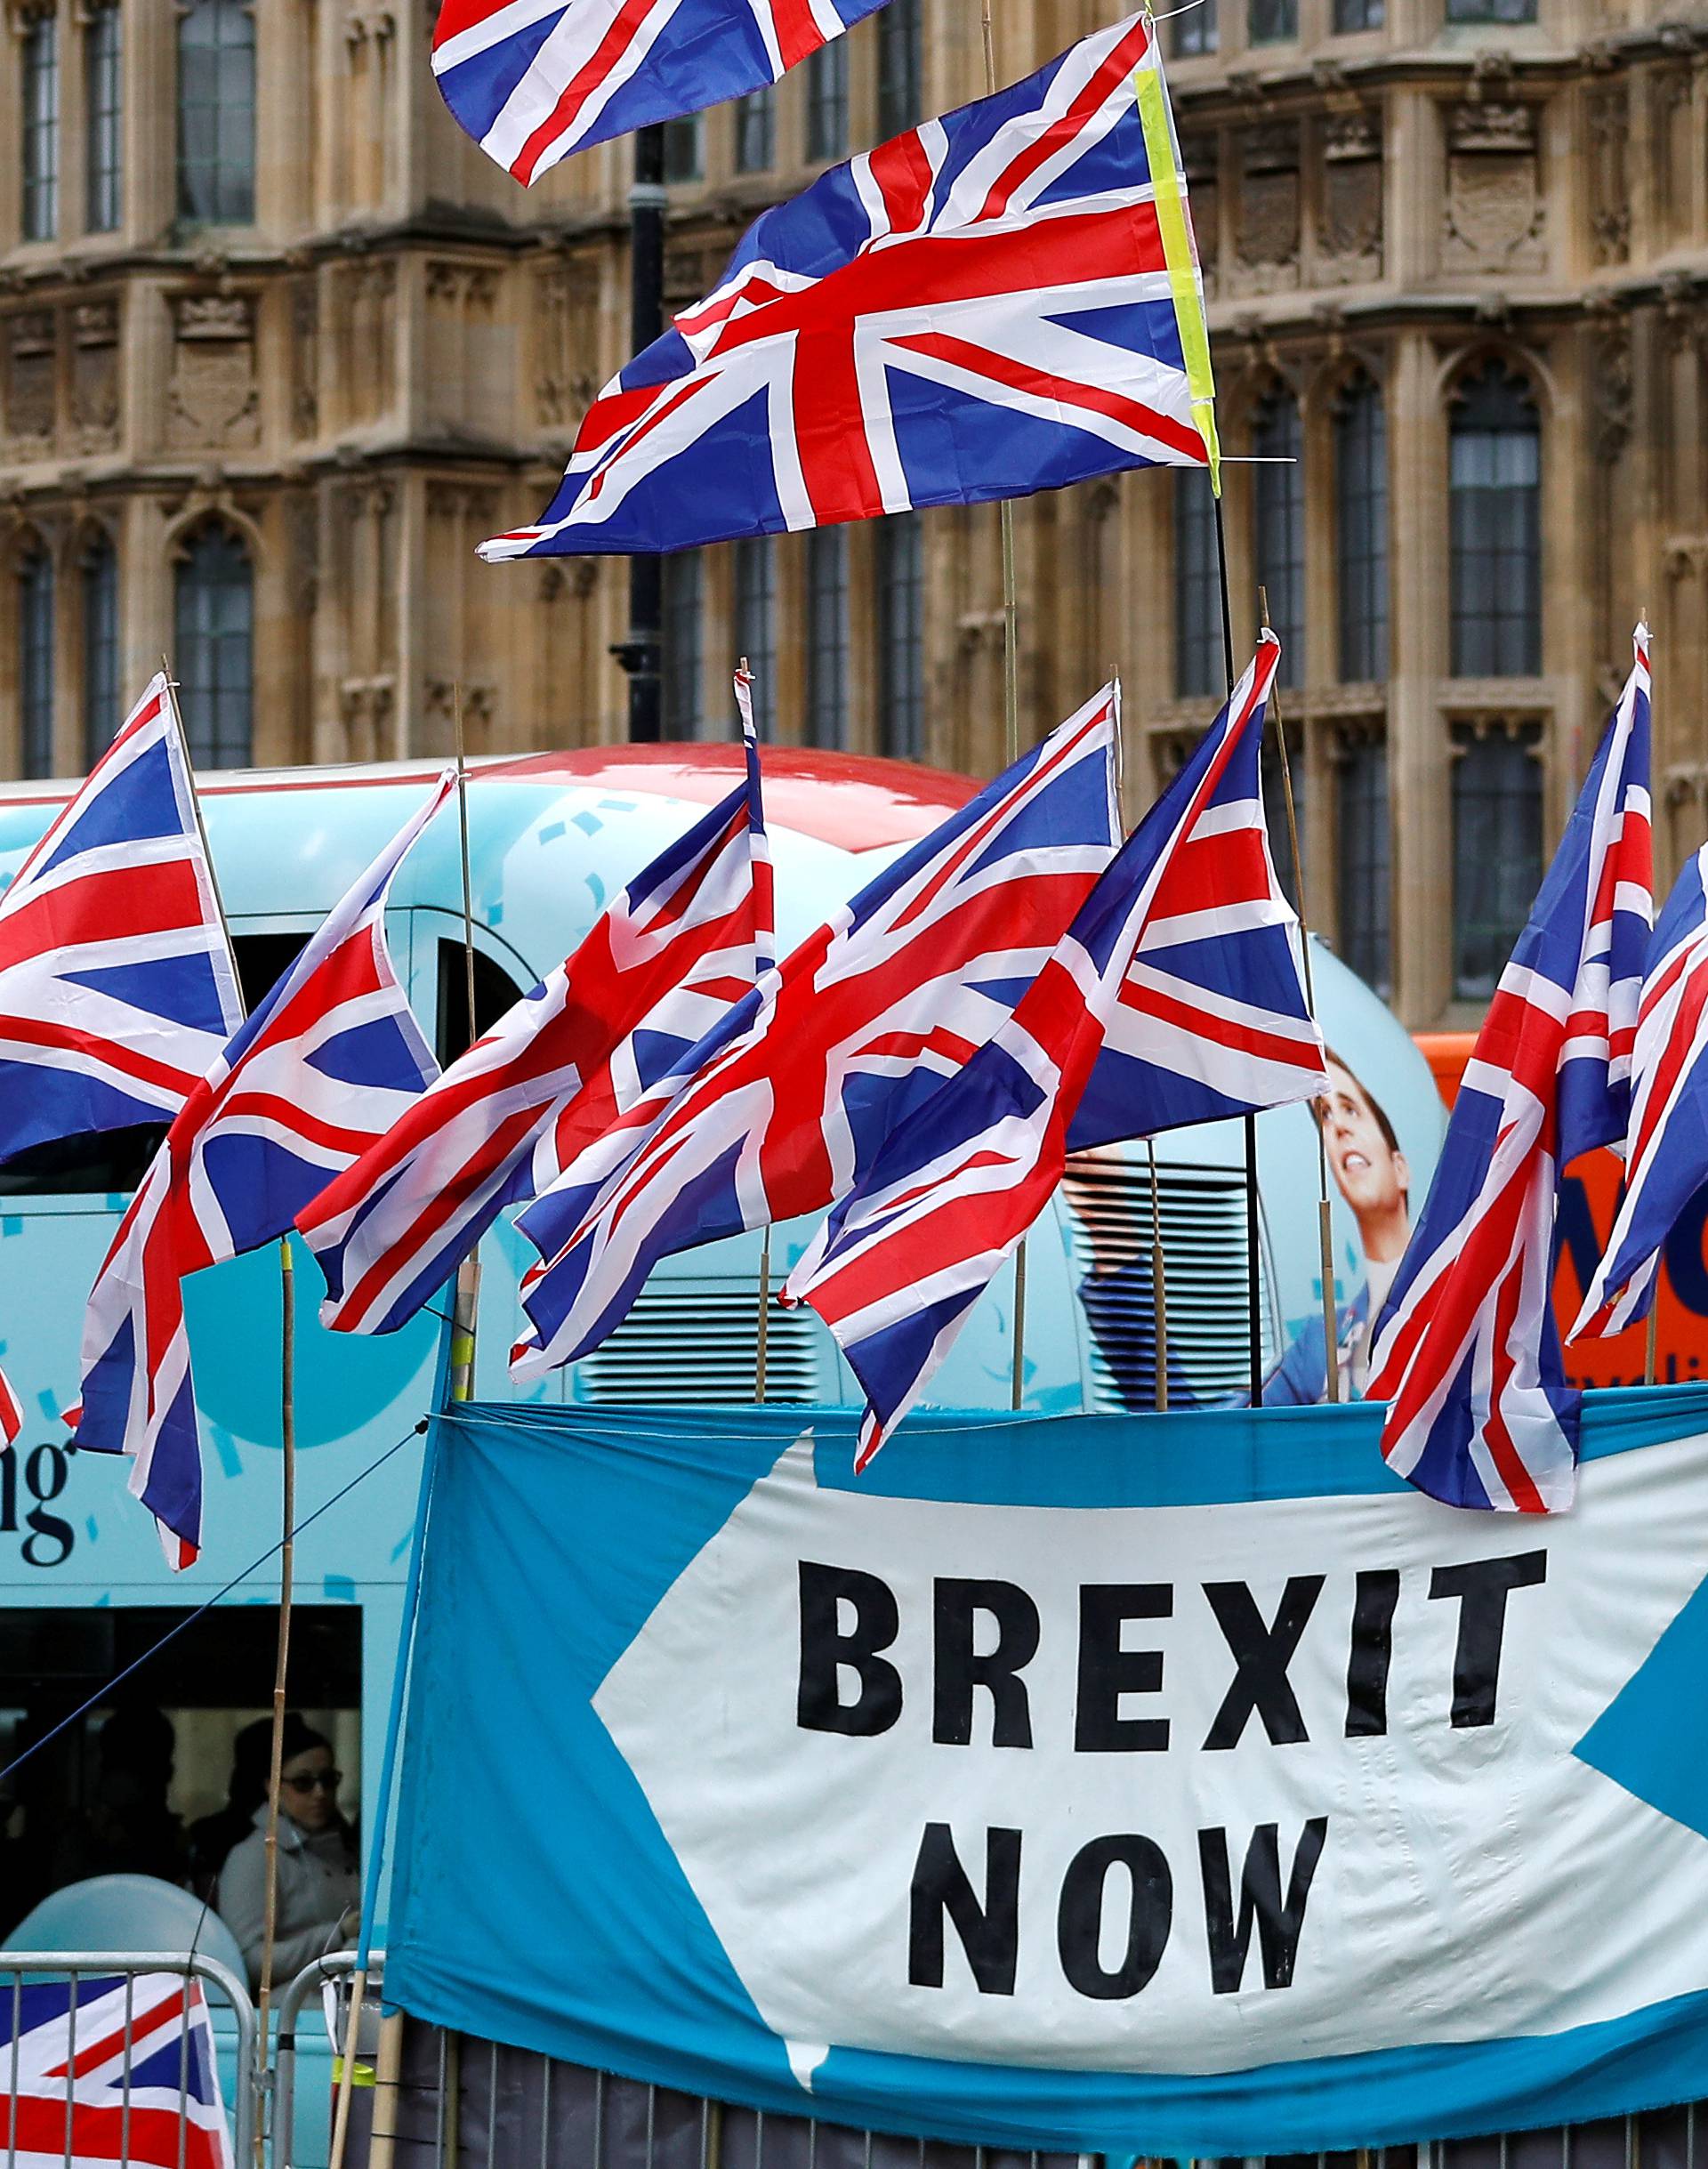 'London se igra okrivljavanja, dogovor Brexita nije nemoguć'